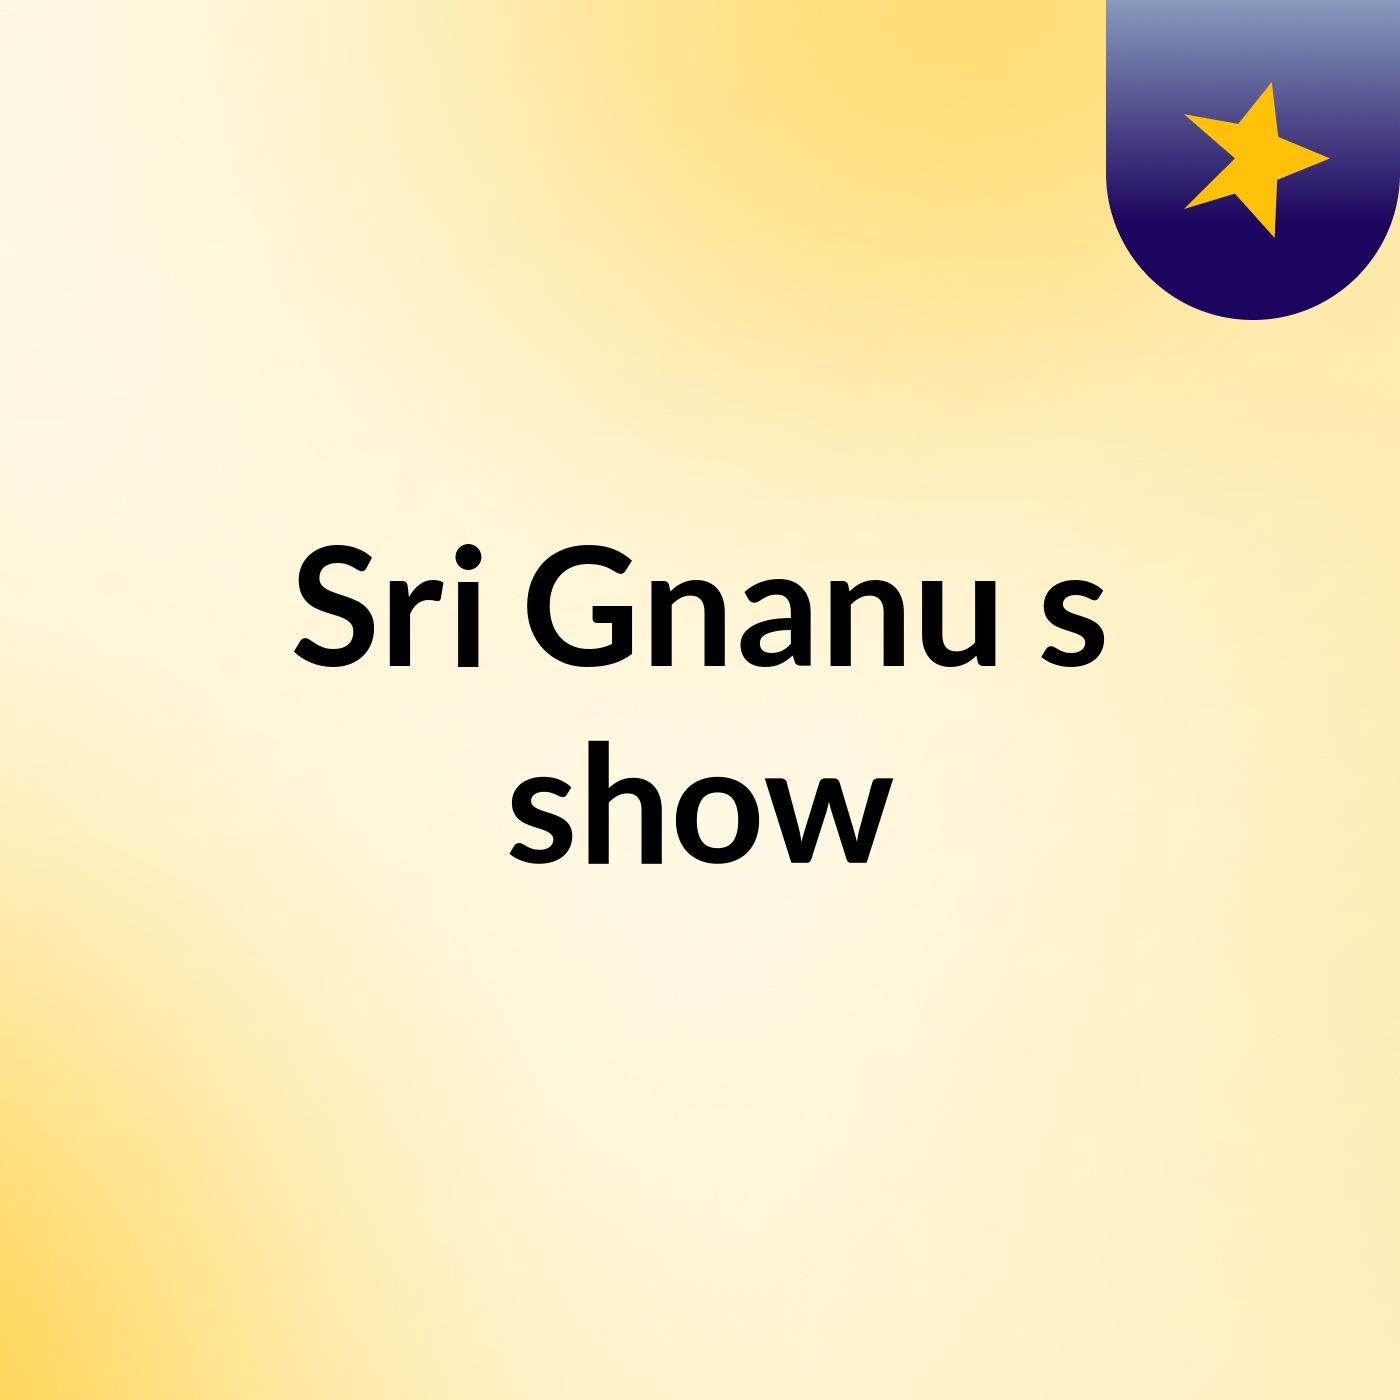 Sri Gnanu's show